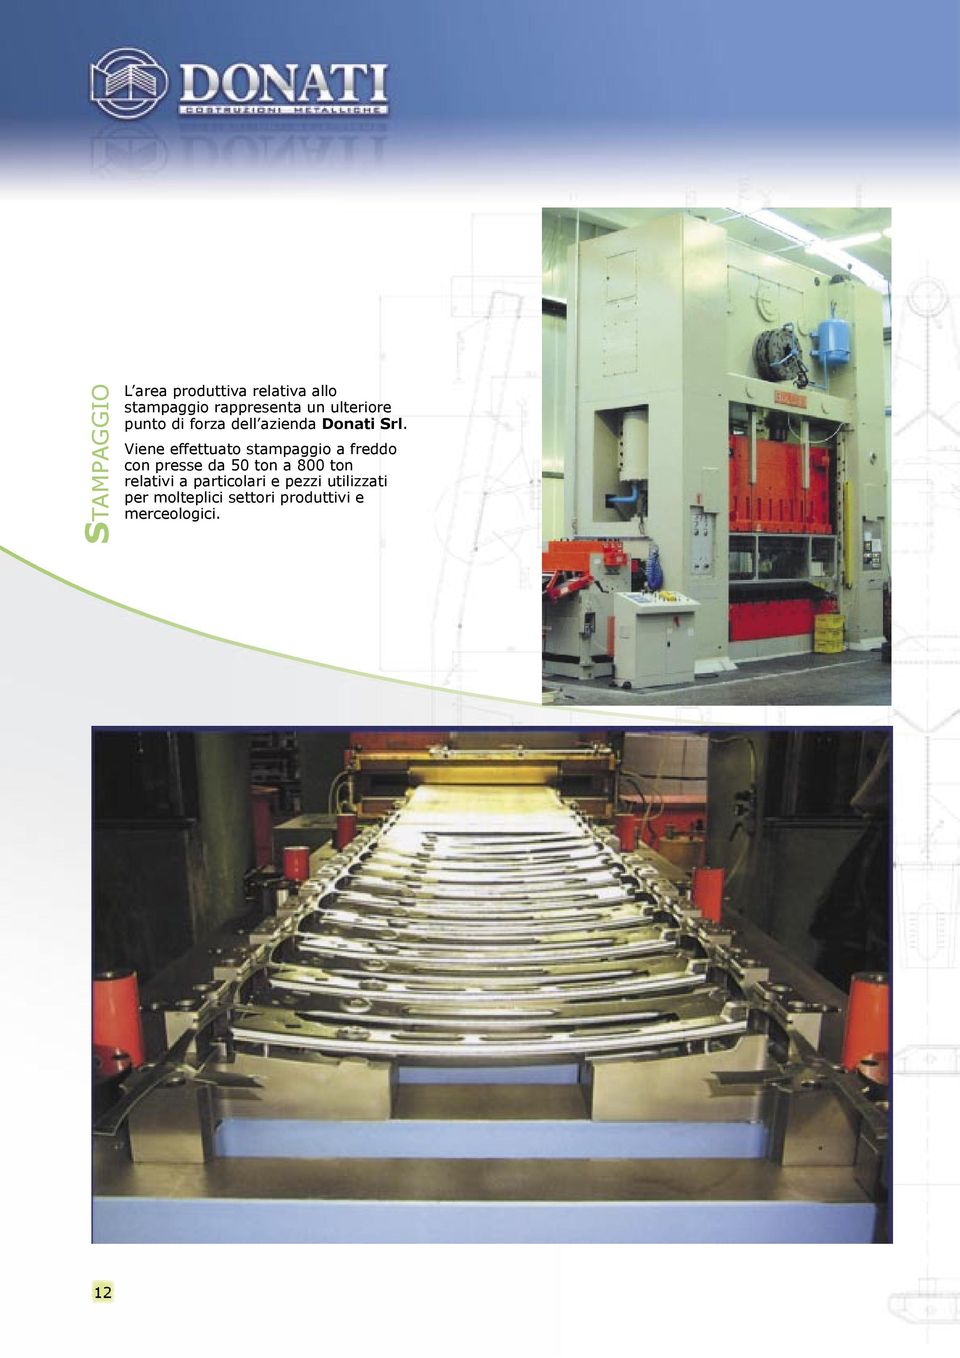 Viene effettuato stampaggio a freddo con presse da 50 ton a 800 ton